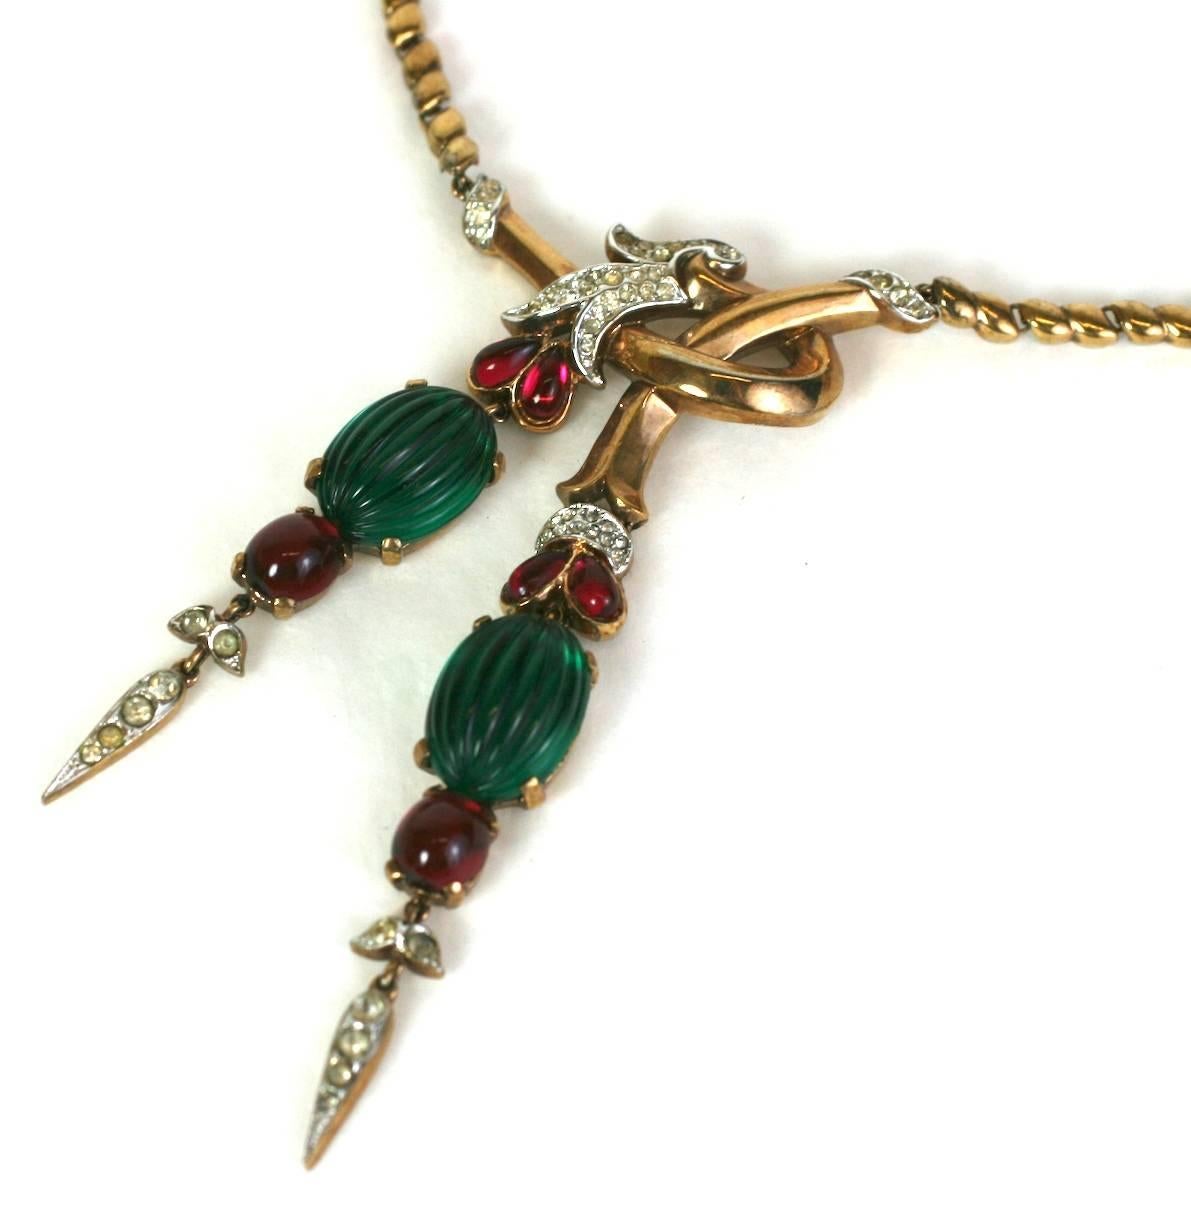 Rare Trifari Moghul Pendant Necklace from the 